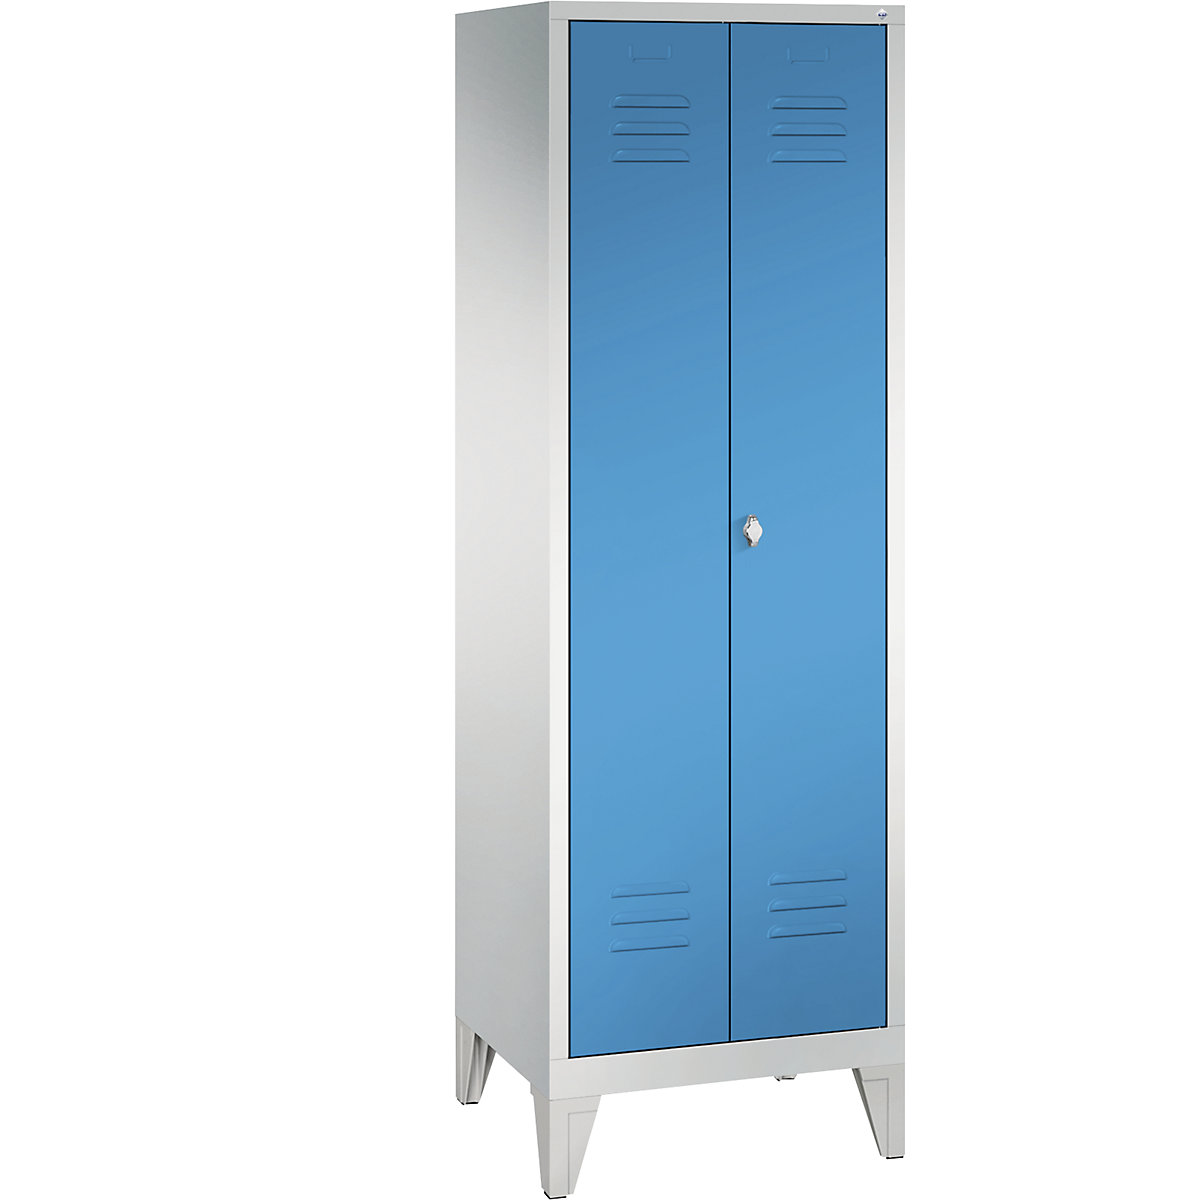 Omara za shranjevanje CLASSIC z nogami in dvokrilnimi vrati na stik – C+P, 2 predelka, širina predelka 300 mm, svetlo sive / svetlo modre barve-3